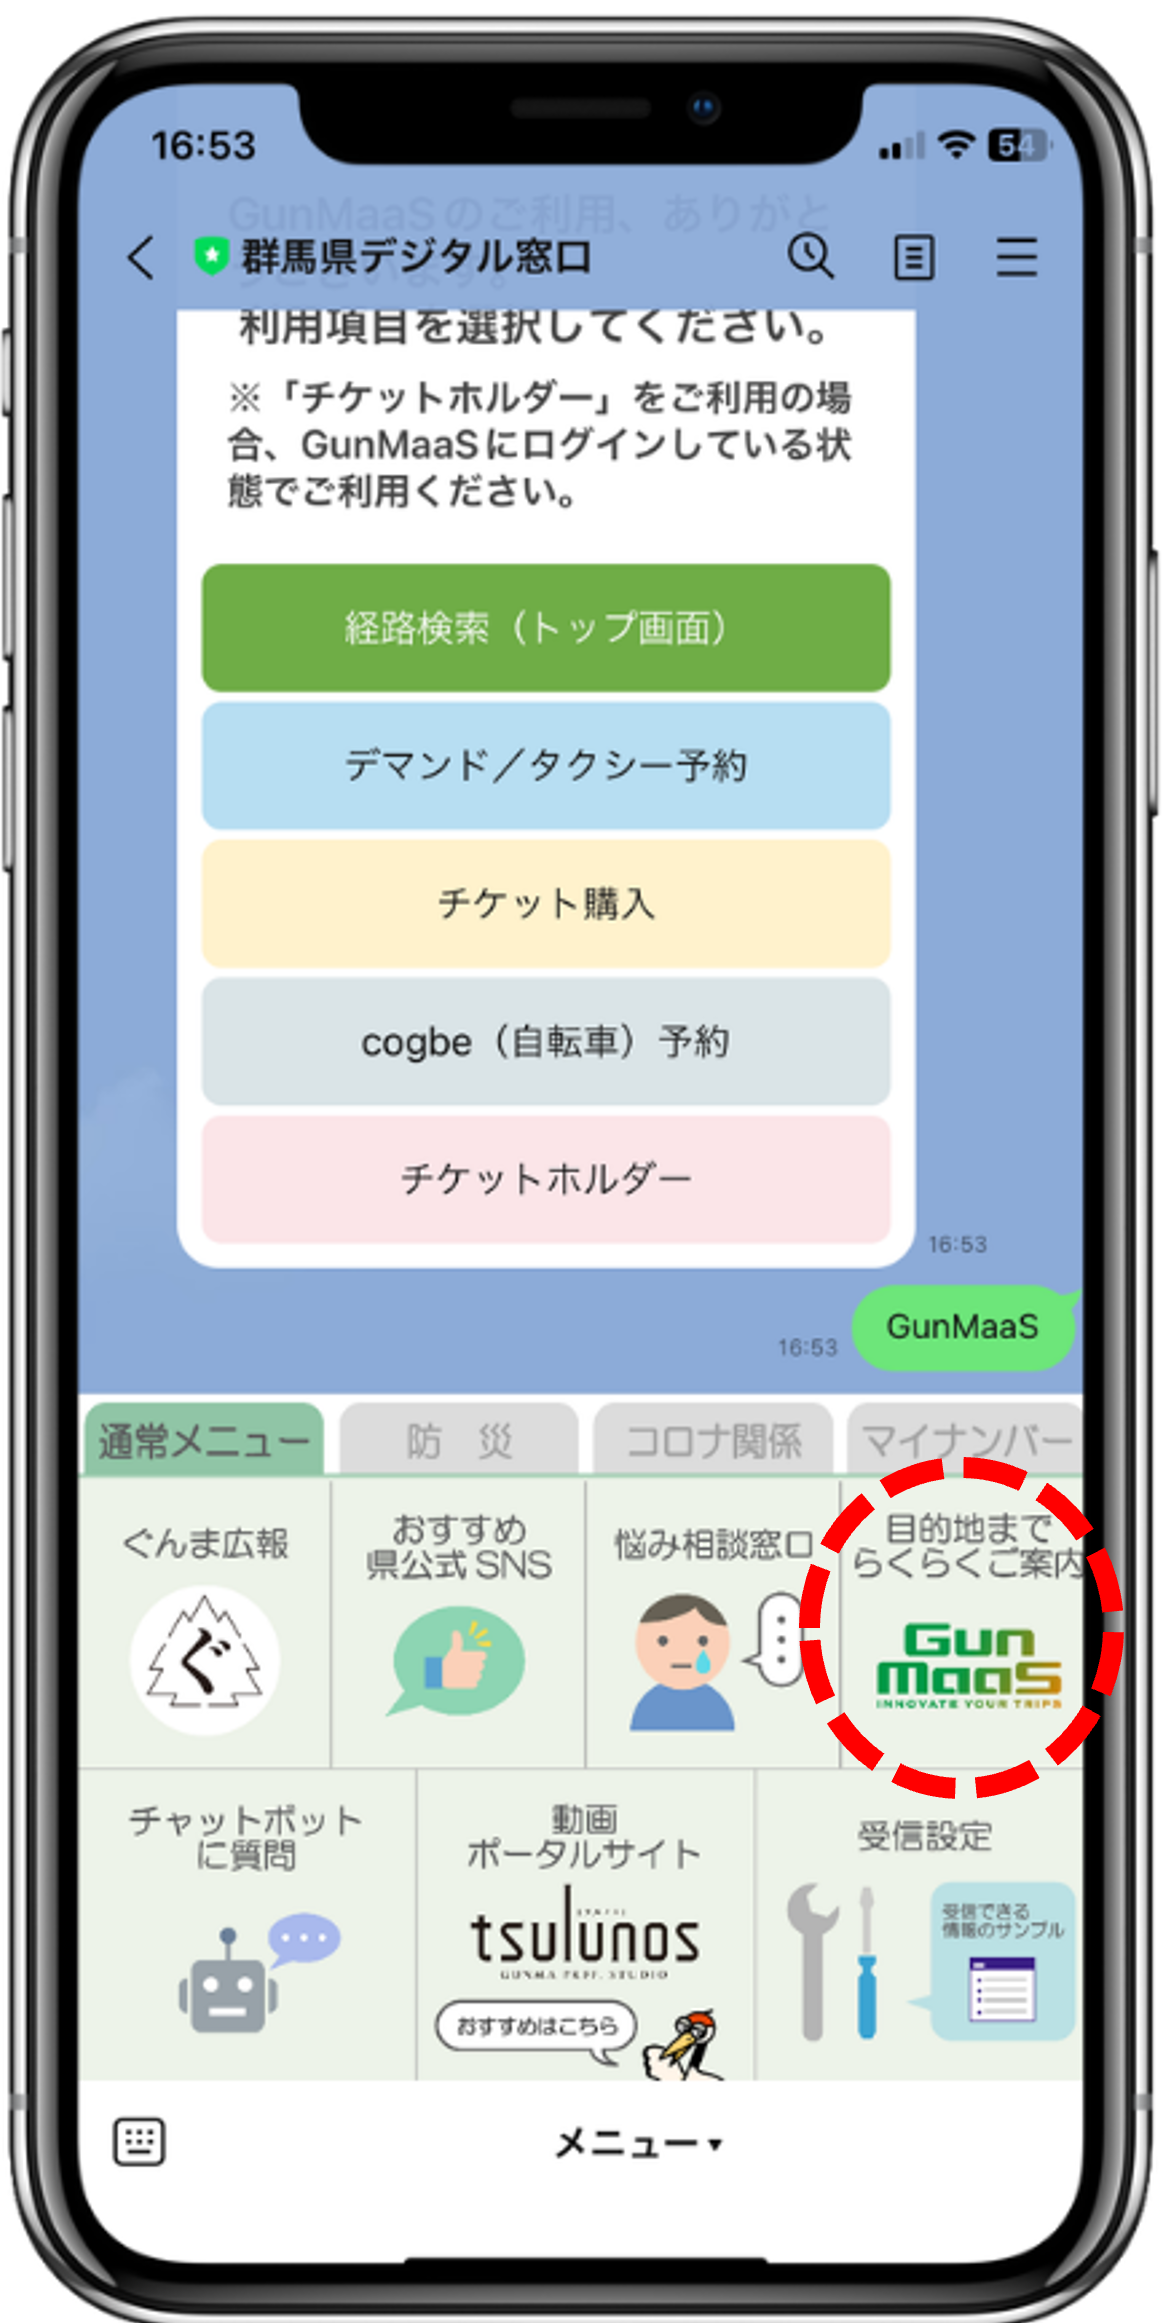 群馬県デジタル窓口でのGunMaaSボタンのイメージの画像